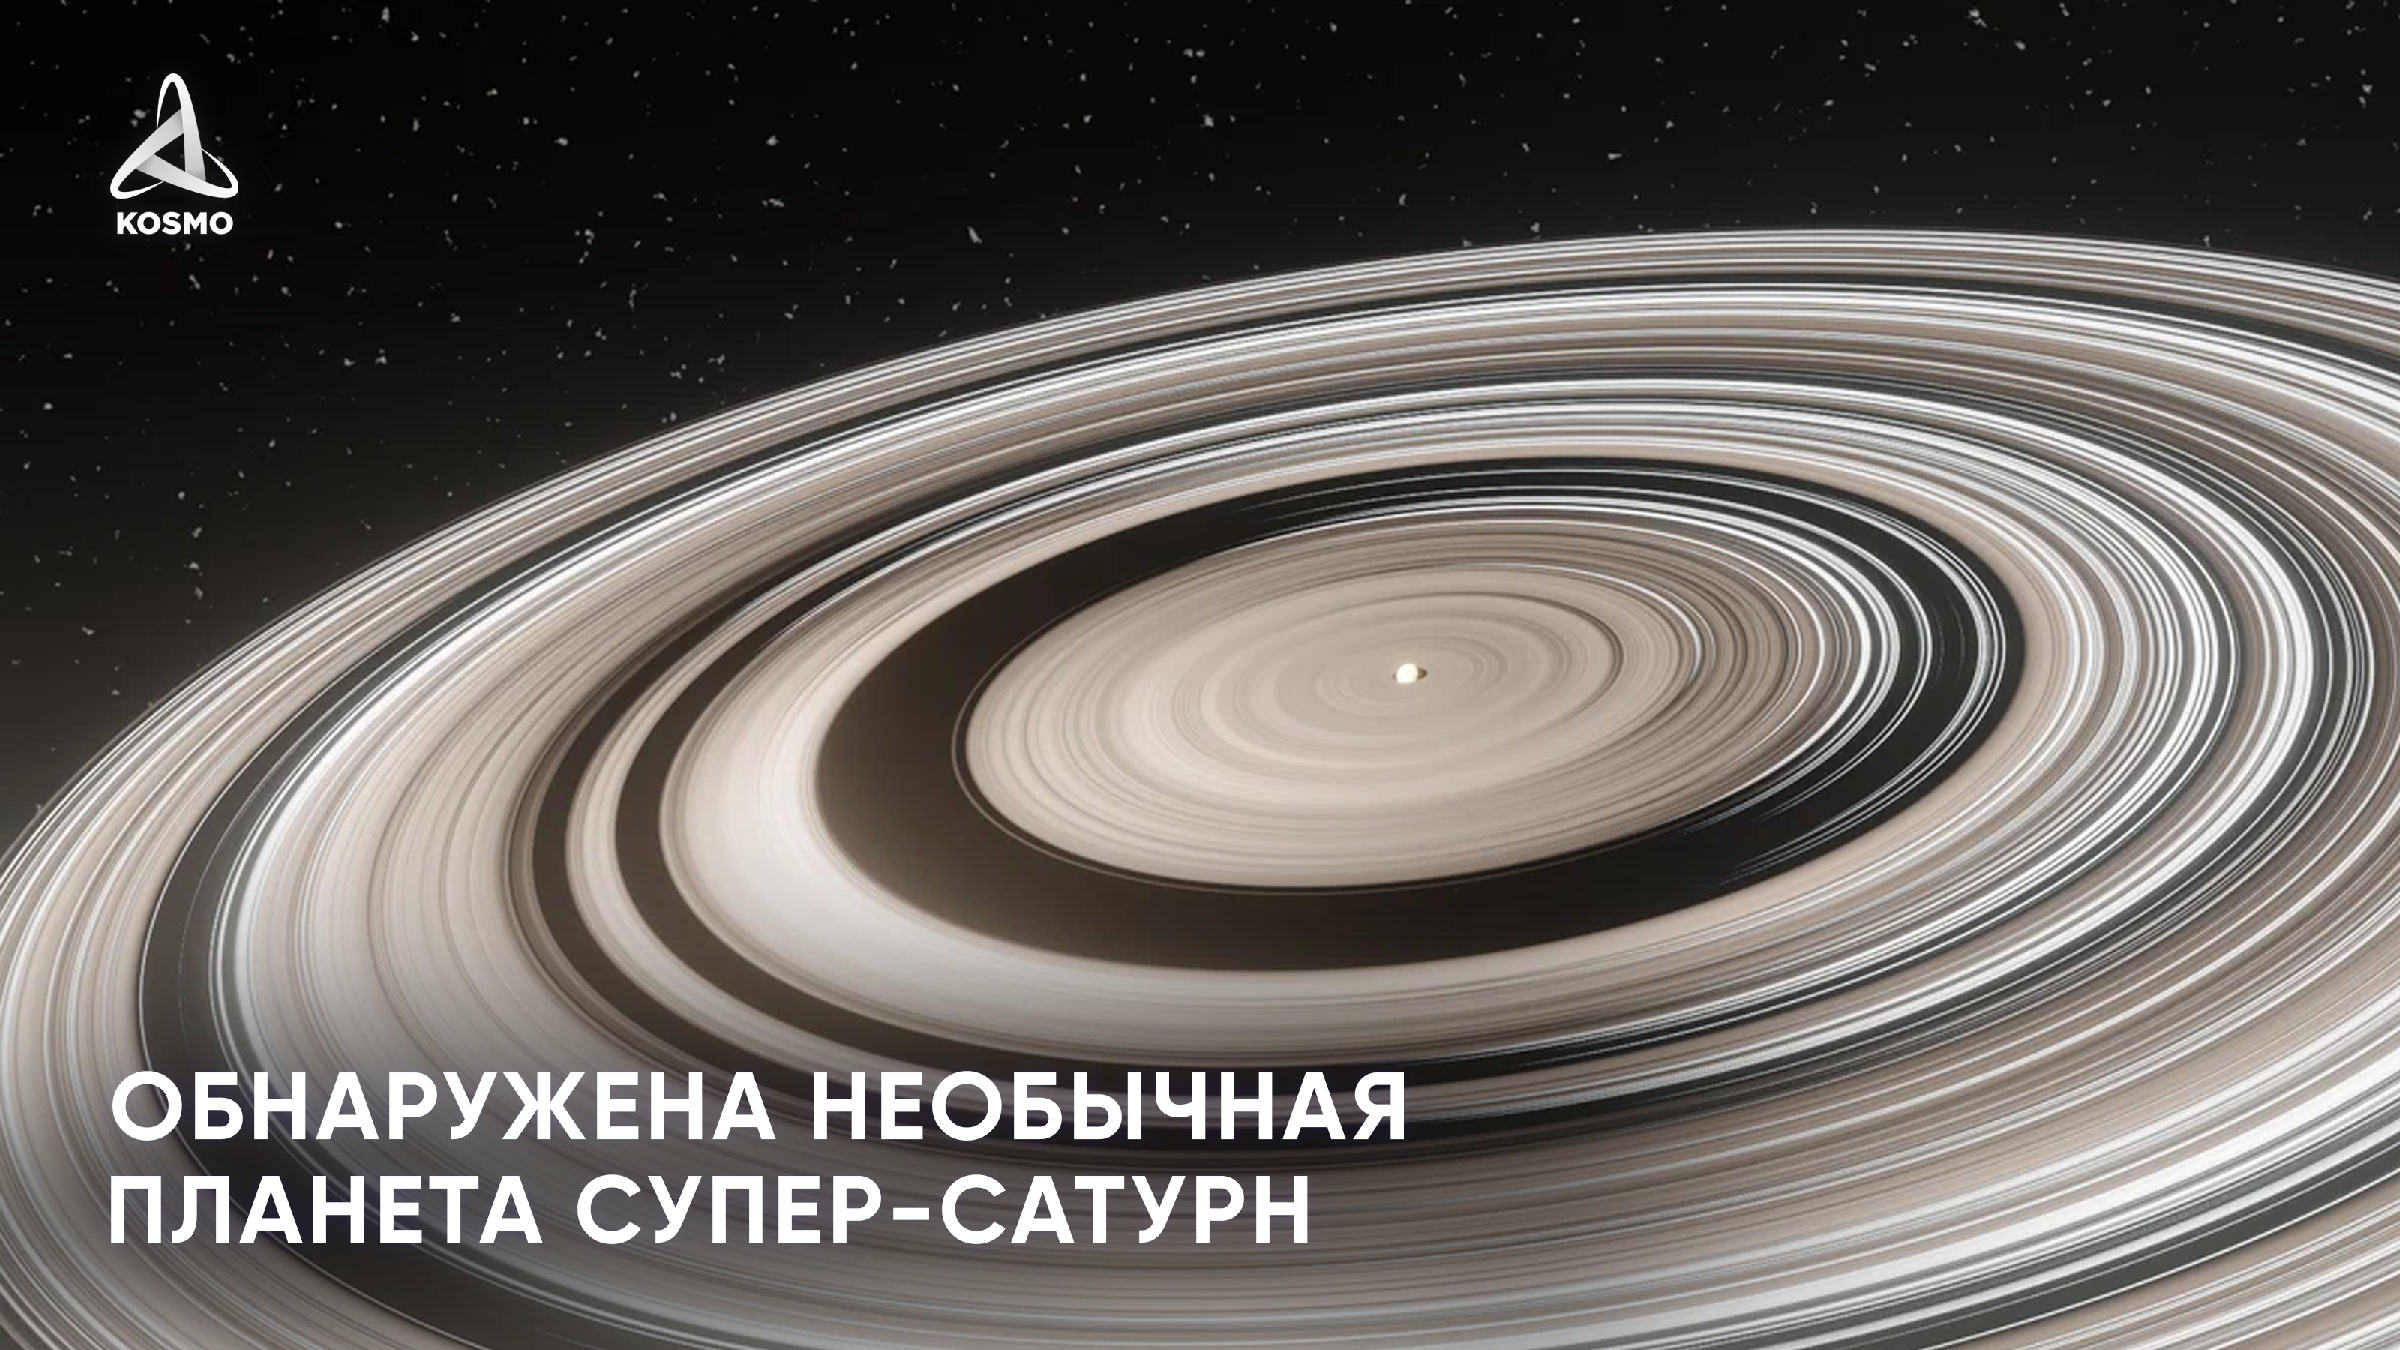 Самая большая система солнечной системы сатурн. 1swasp j1407 b. Экзопланета j1407b. Супер Сатурн j1407b. Планета 1swasp j1407 b..